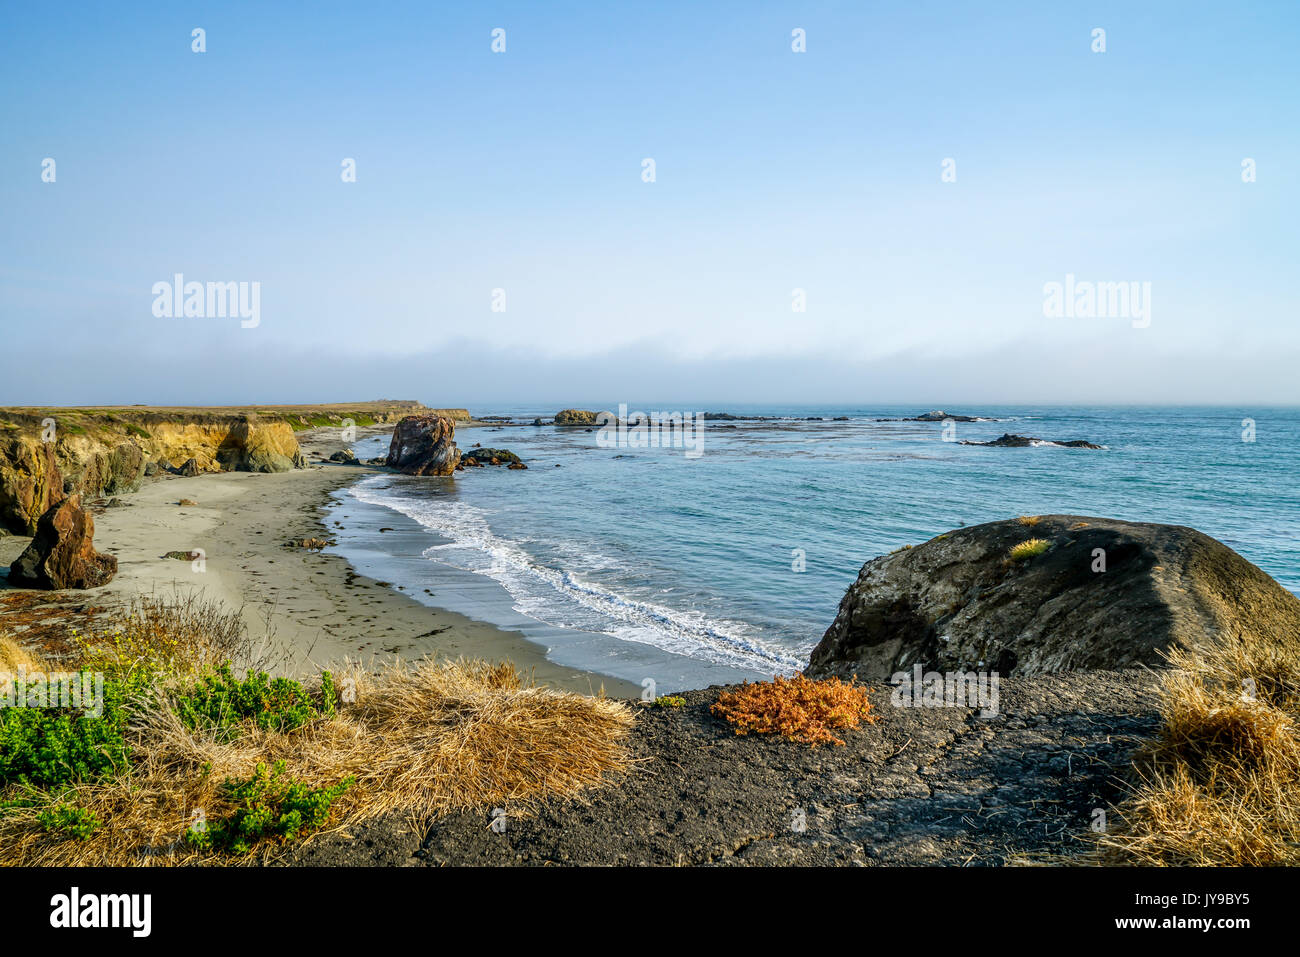 Une zone de la côte de Californie du sud qui a des plages de sable avec des falaises rocheuses et de grands rochers sur la rive et dans l'eau. Banque D'Images